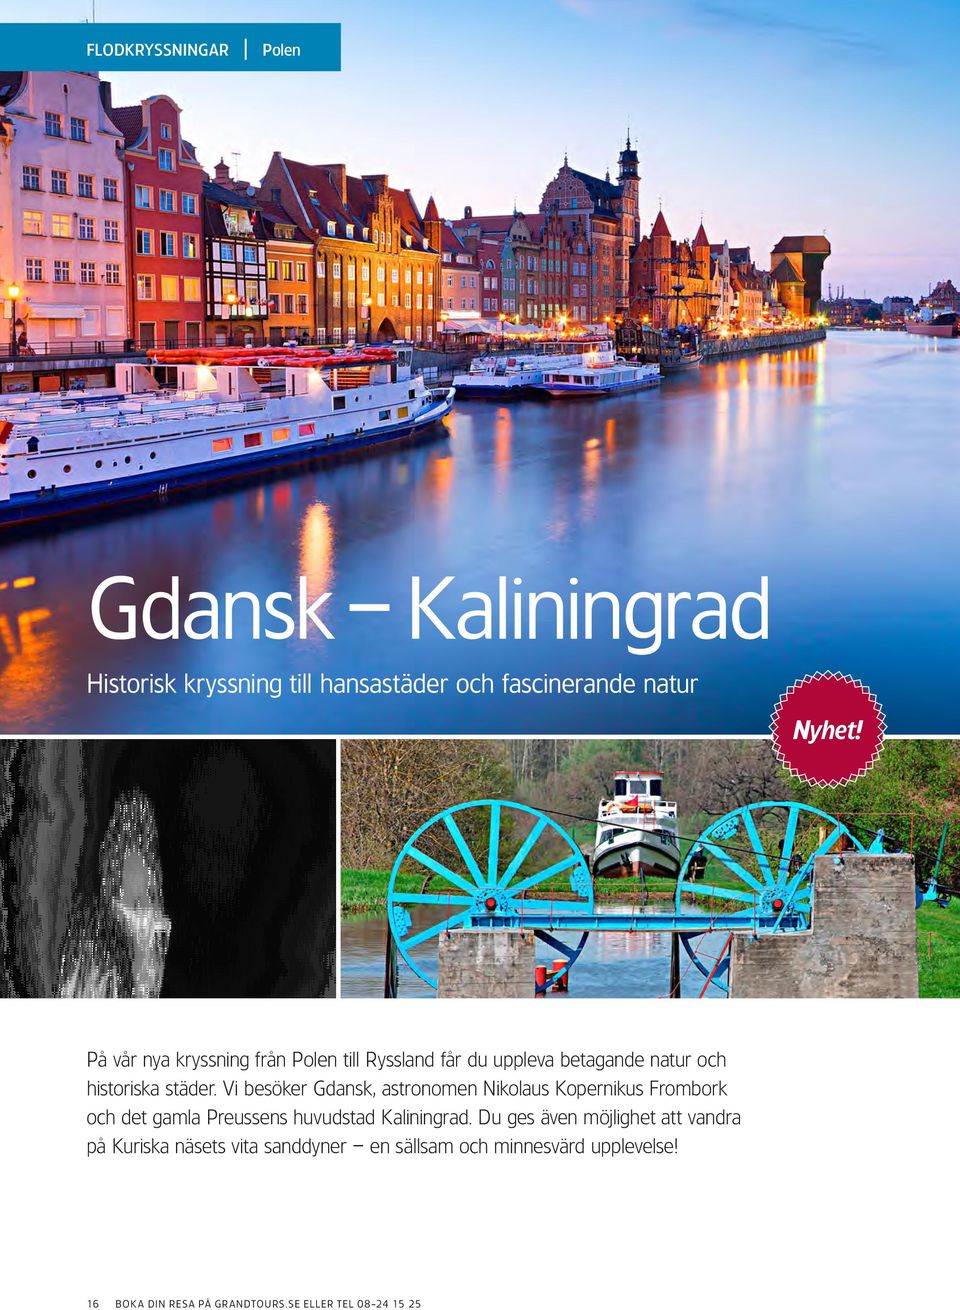 Vi besöker Gdansk, astronomen Nikolaus Kopernikus Frombork och det gamla Preussens huvudstad Kaliningrad.